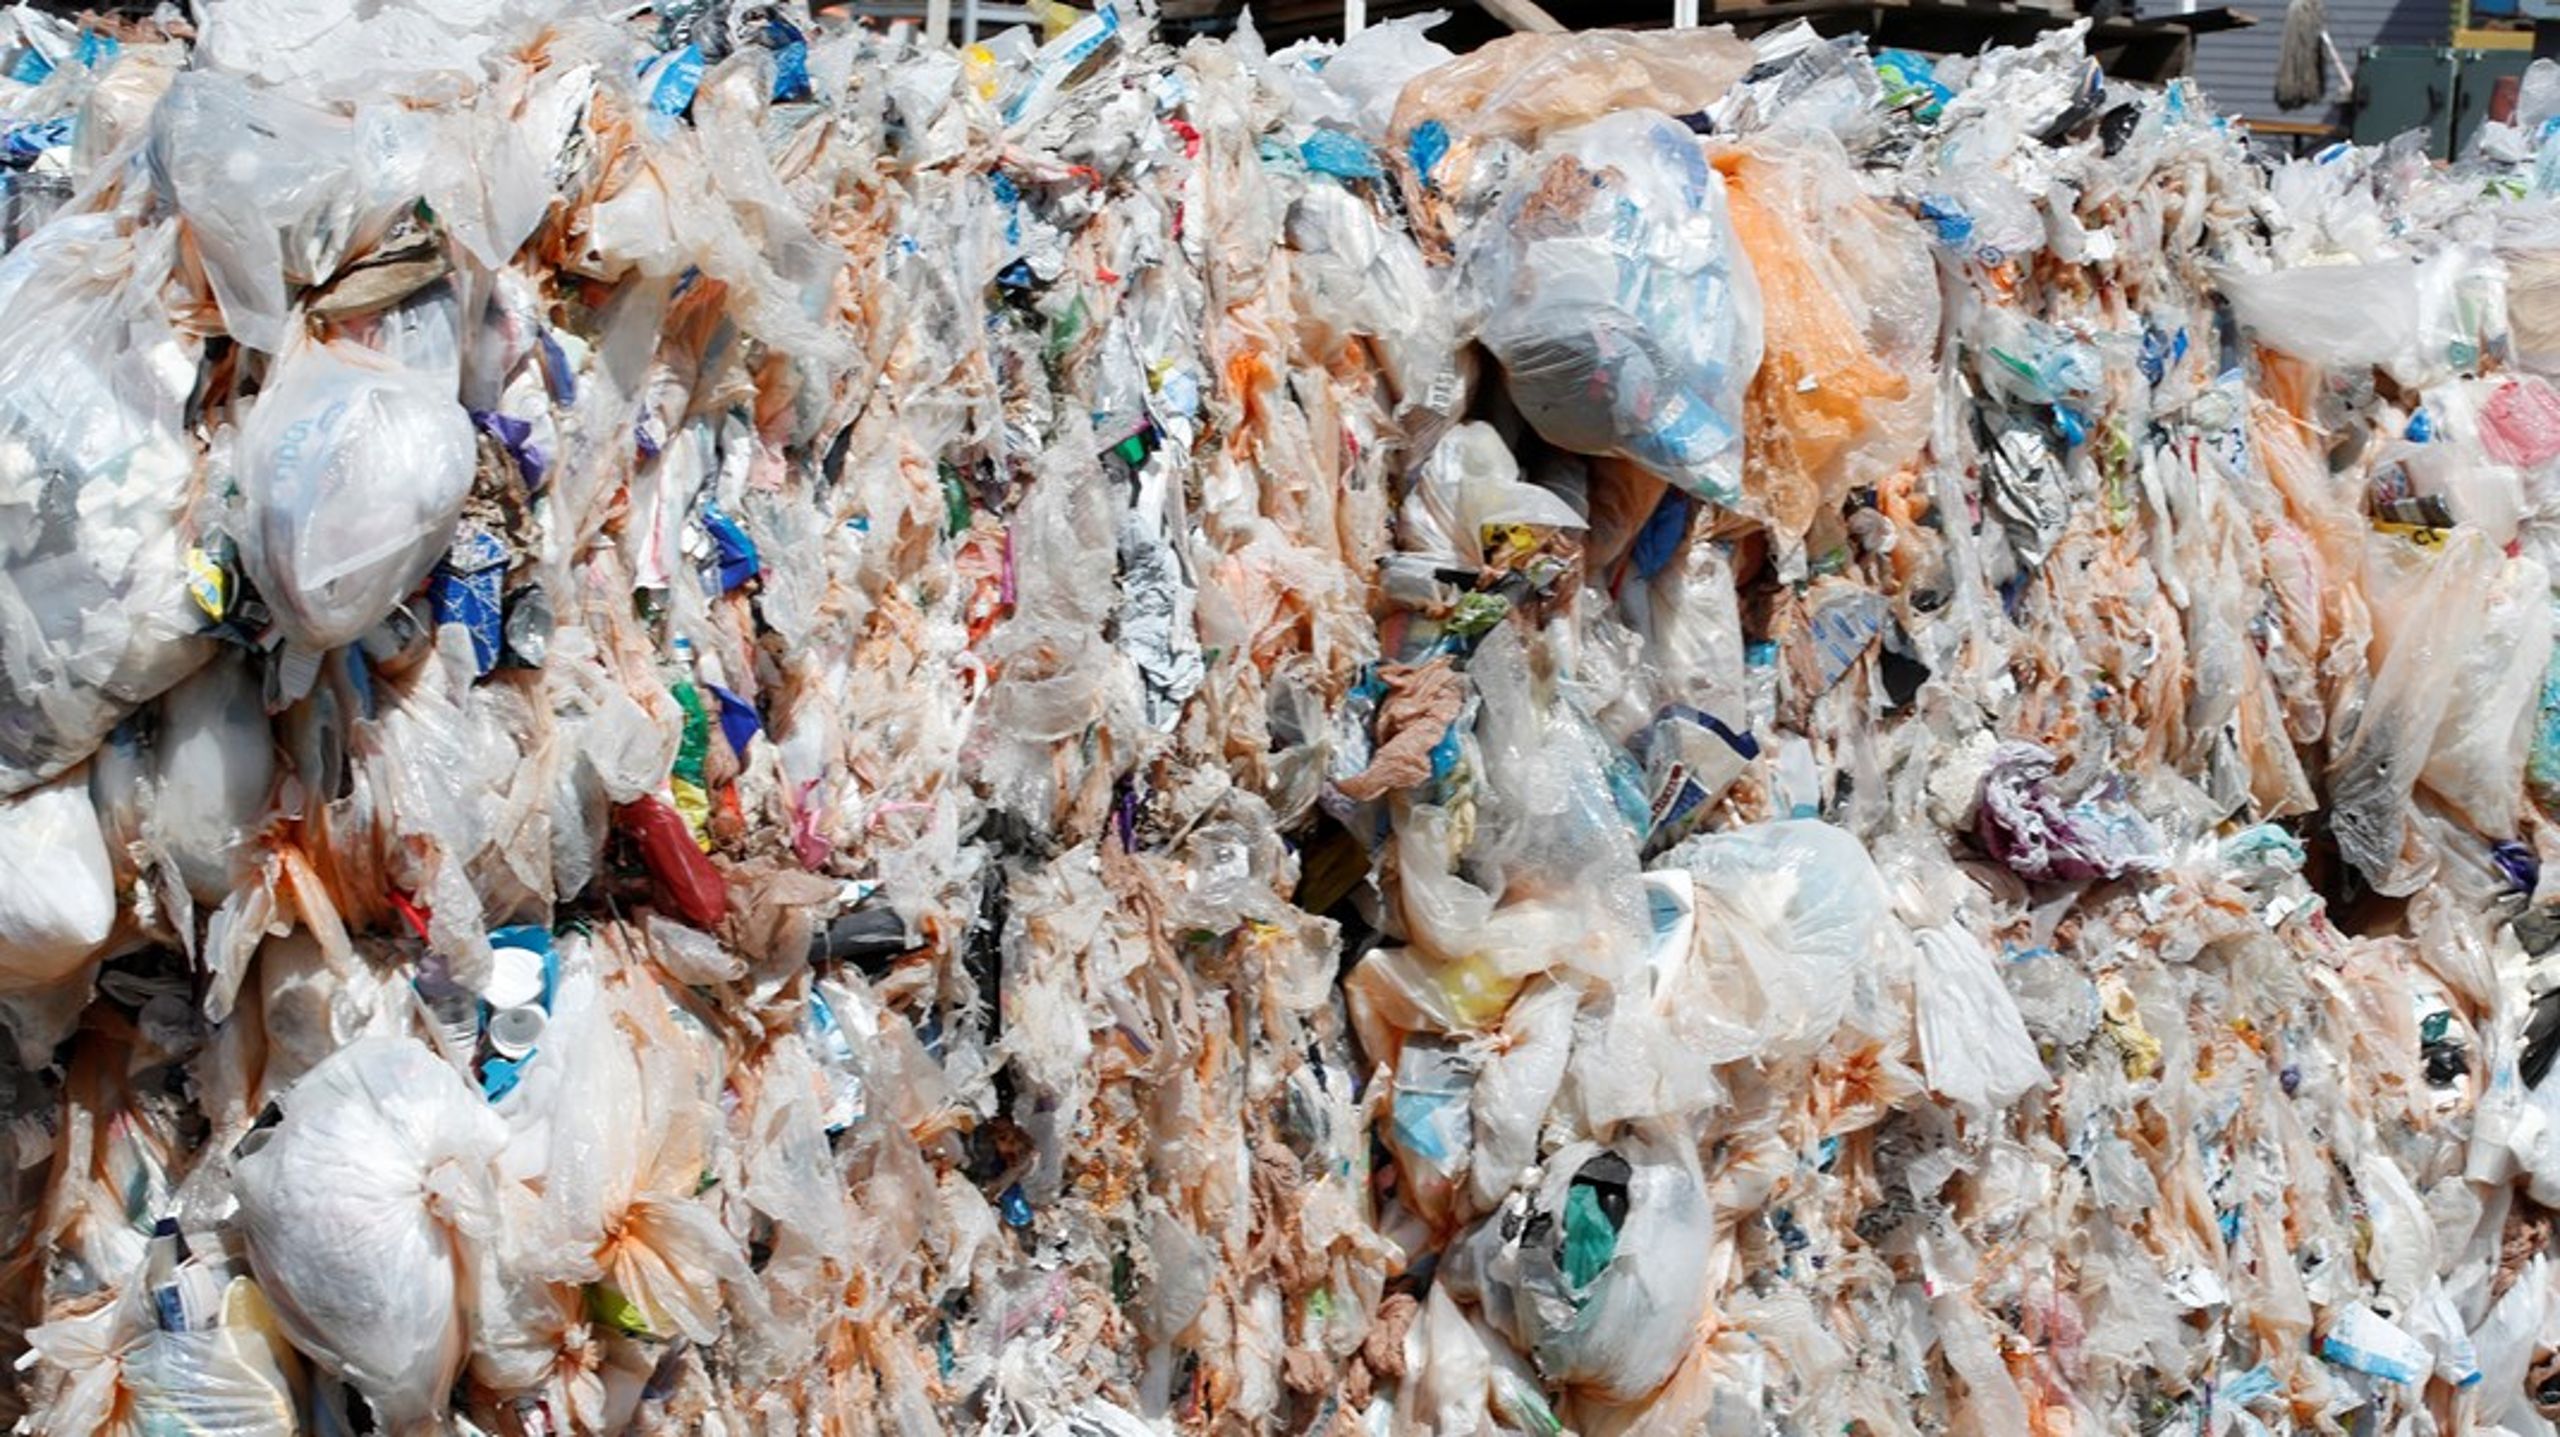 Det er helt afgørende, at de ansvarlige politikere og deres embedsmænd sikrer, at der skabes incitament til at genanvende plast, som vi allerede gør i stor udstrækning i Danmark i dag, skriver Christina Busk.